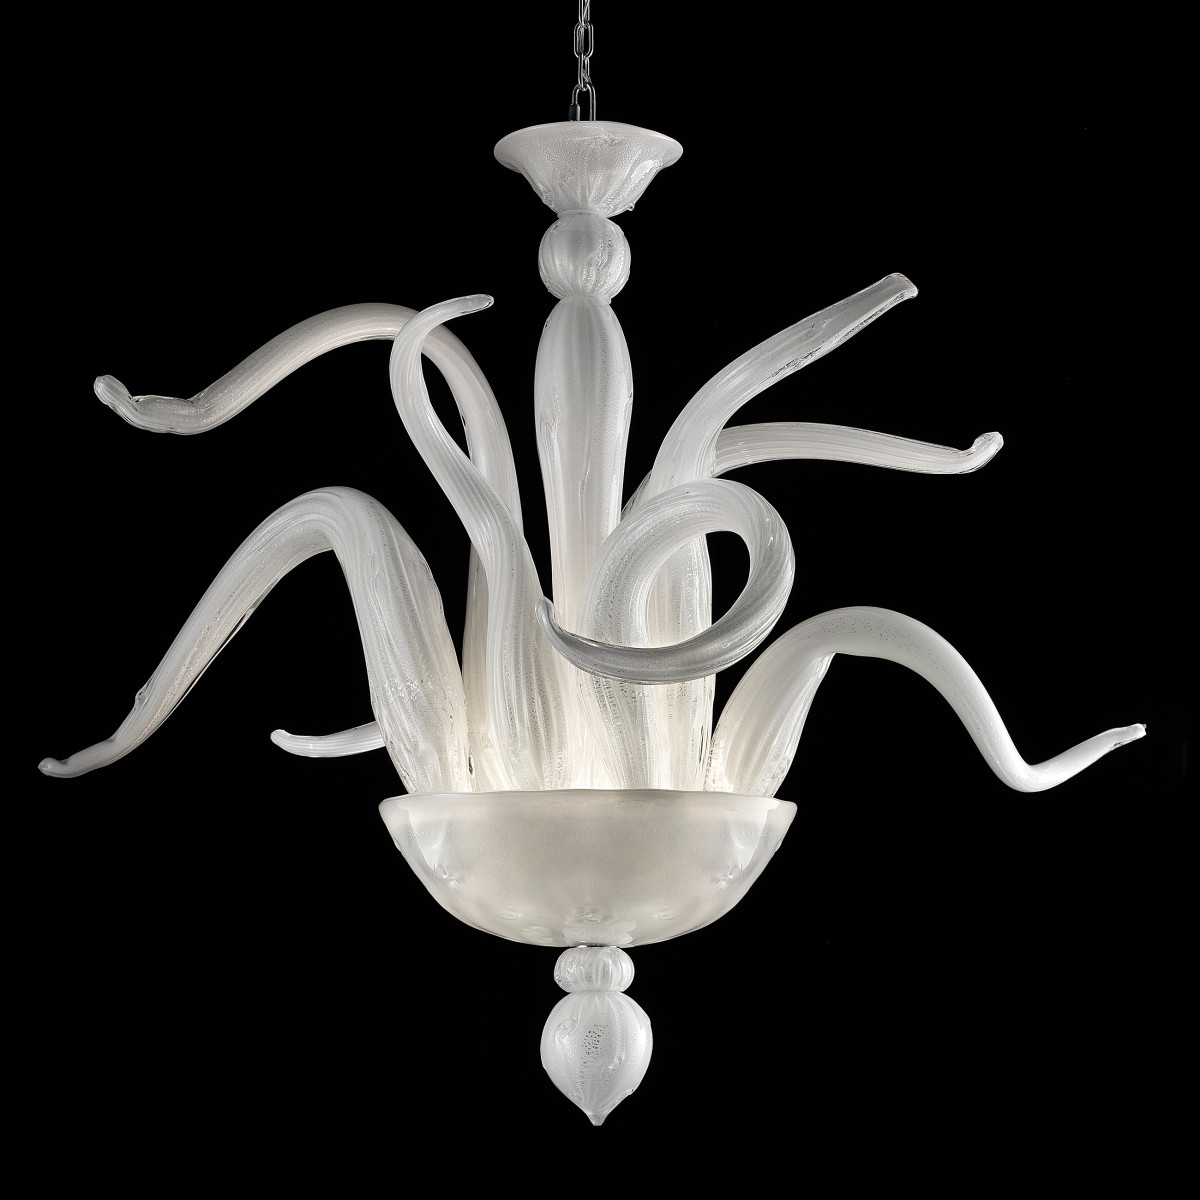 Simpatico - 4+3 lights Murano glass chandelier white silver